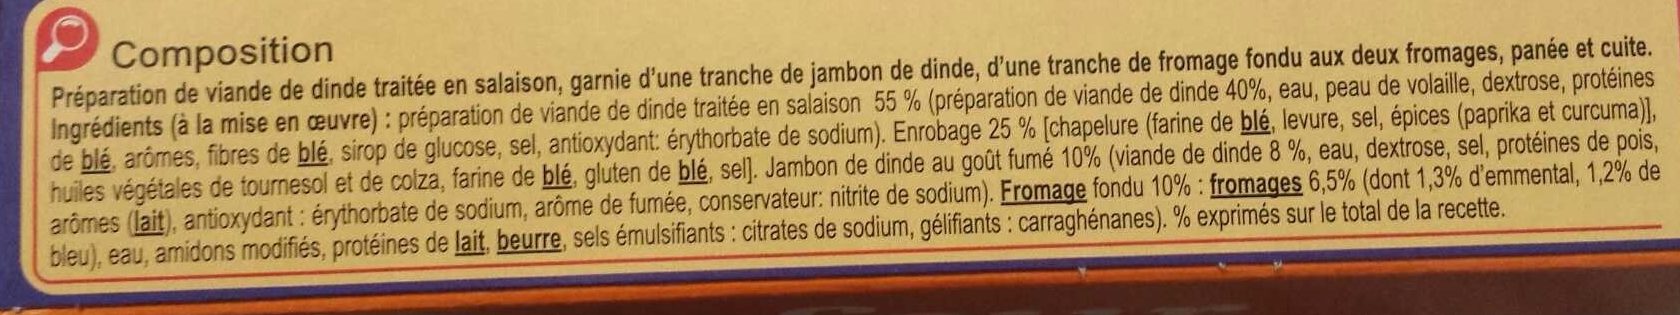 Cordons Bleus de dinde aux 2 Fromages - Ingredients - fr